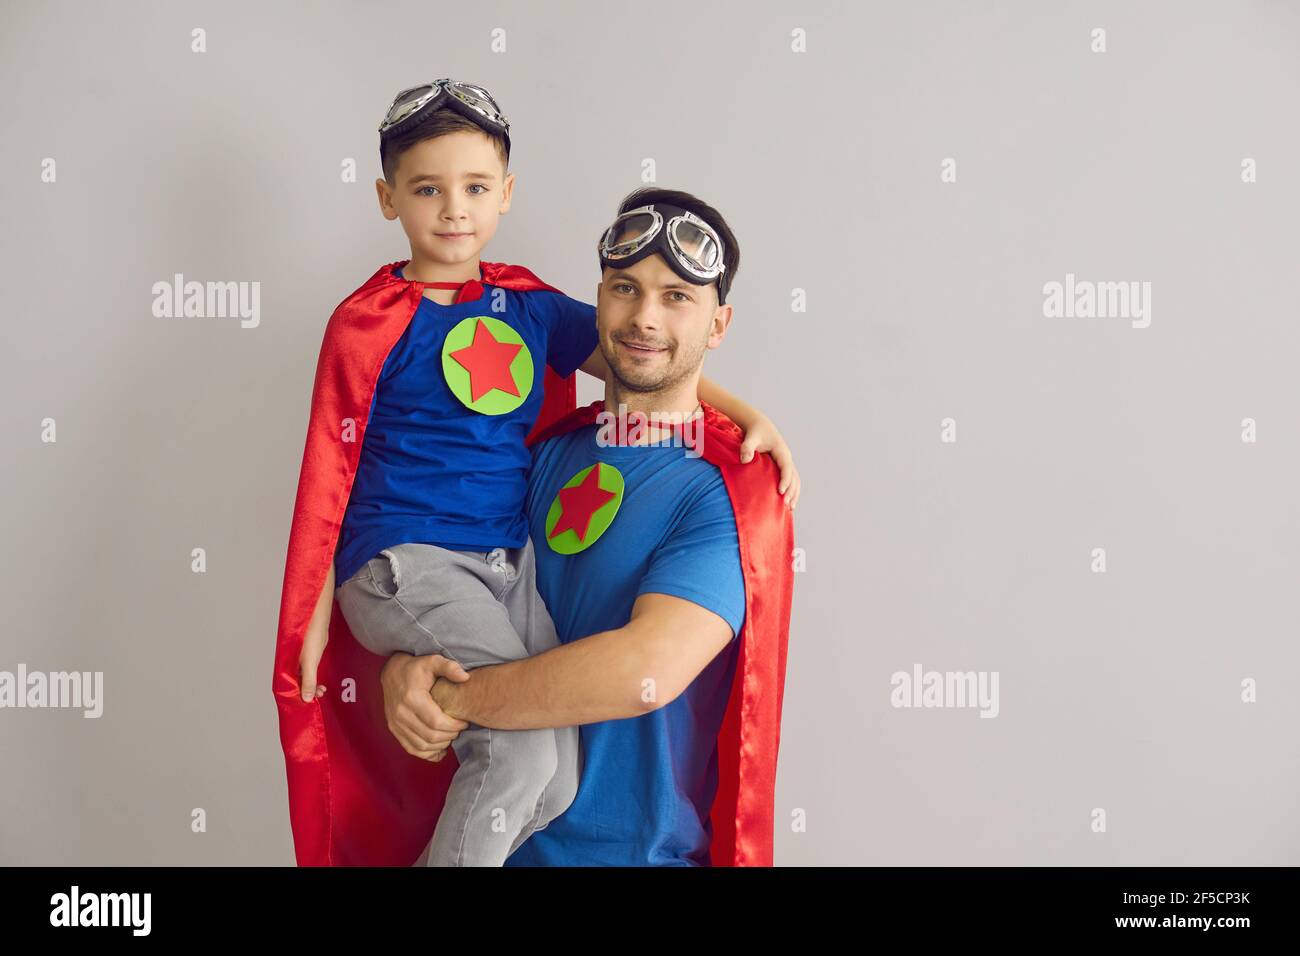 Porträt von Vater und Sohn als Superhelden gekleidet stehen in studio mit grauem Hintergrund Stockfoto